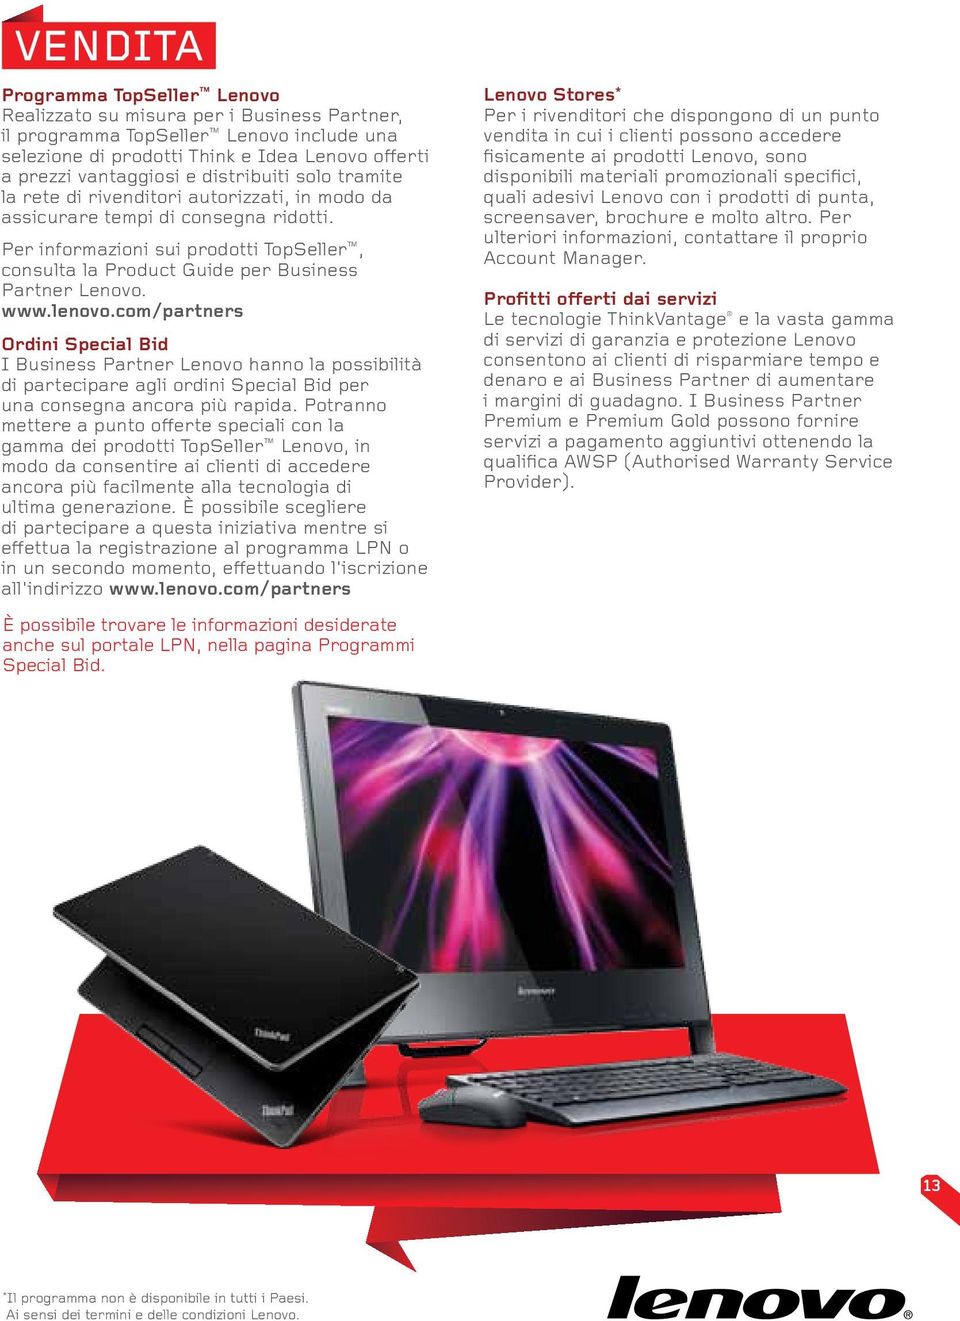 Per informazioni sui prodotti TopSeller, consulta la Product Guide per Business Partner Lenovo.